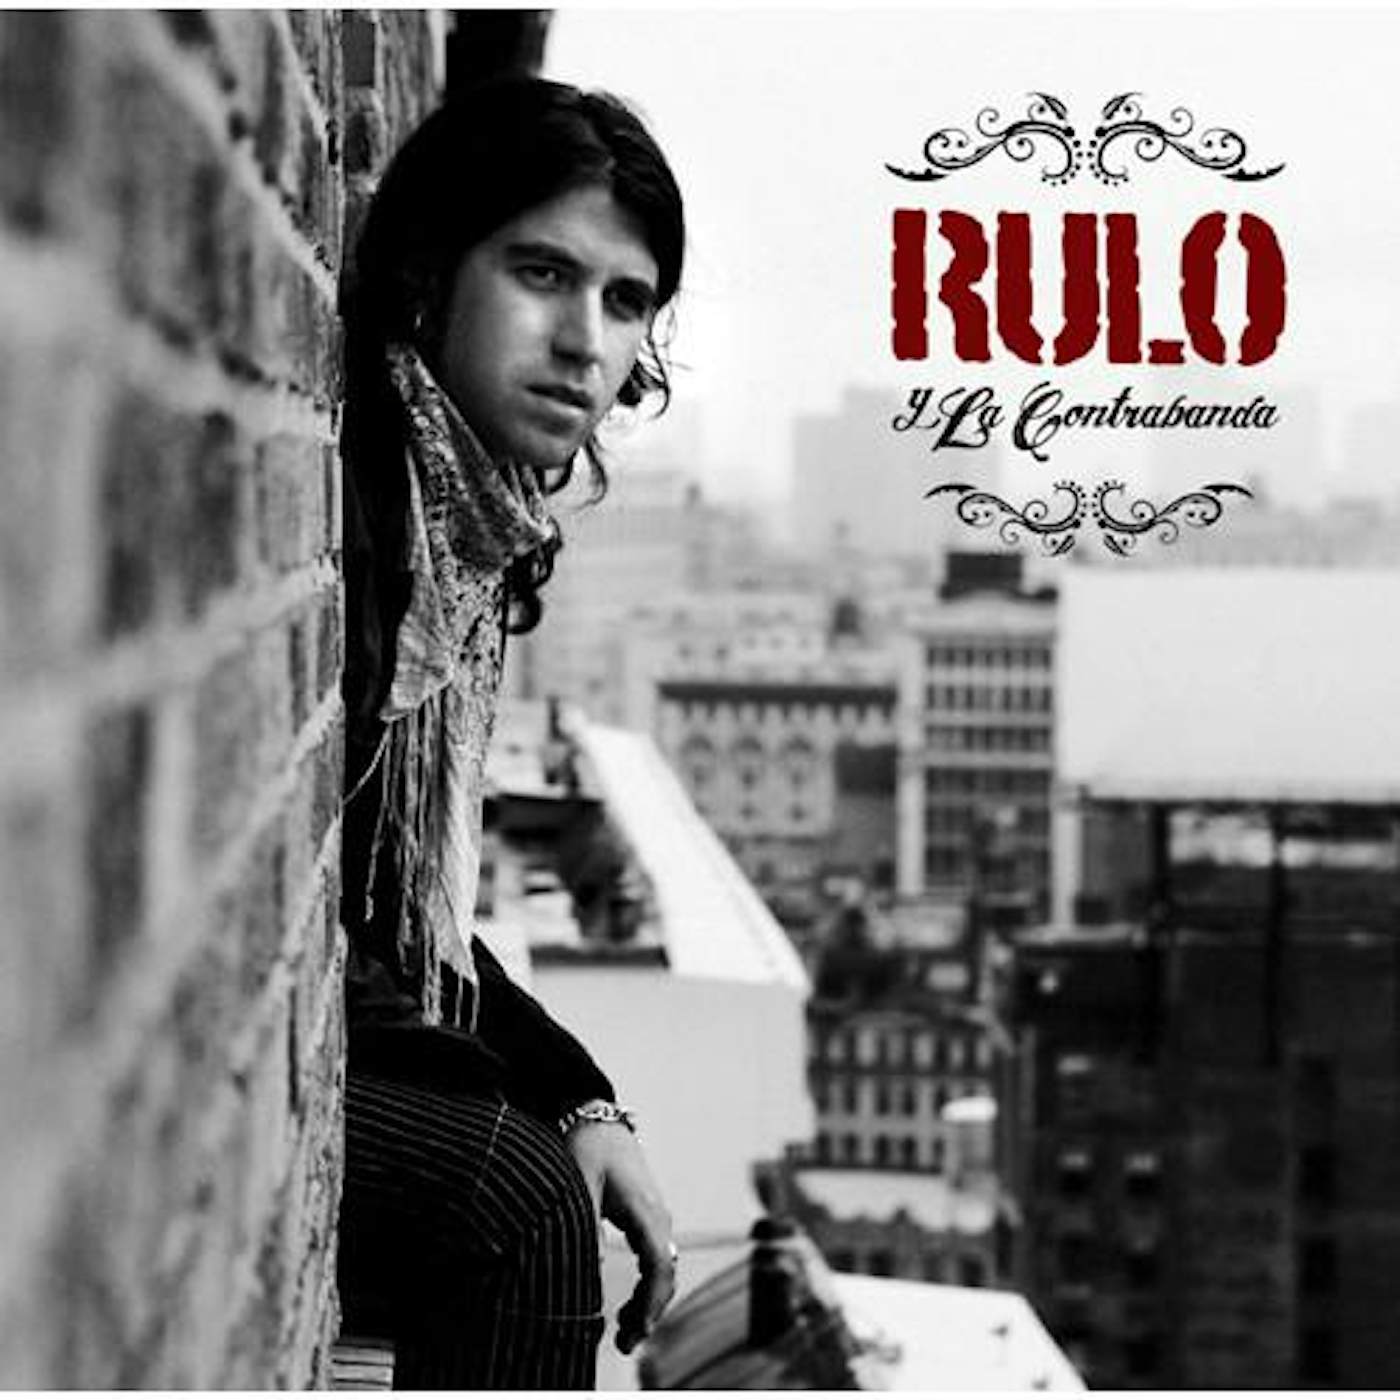 Rulo y la contrabanda SEYALES DE HUMO Vinyl Record